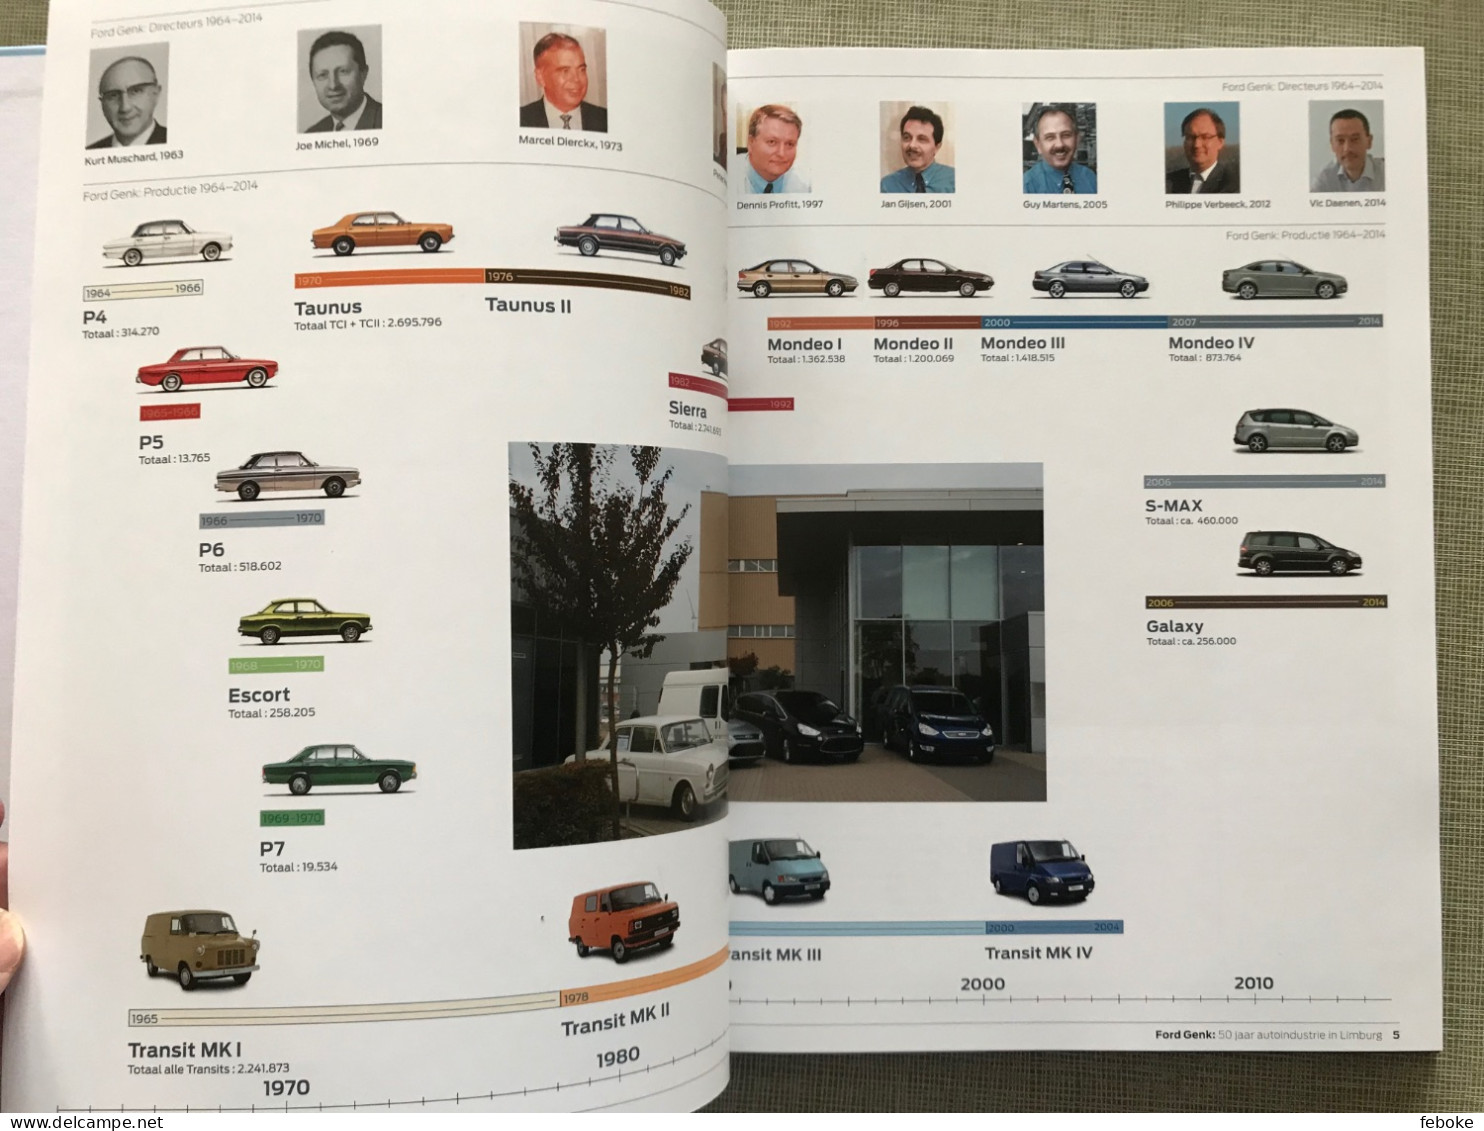 FORD GENK 1964-2014 + DE EEUW VAN FORD FORD MOTOR COMPANY 100 YEARS - AUTOINDUSTRIE FORD FOTOBOEKEN GESCHIEDENIS - Other & Unclassified